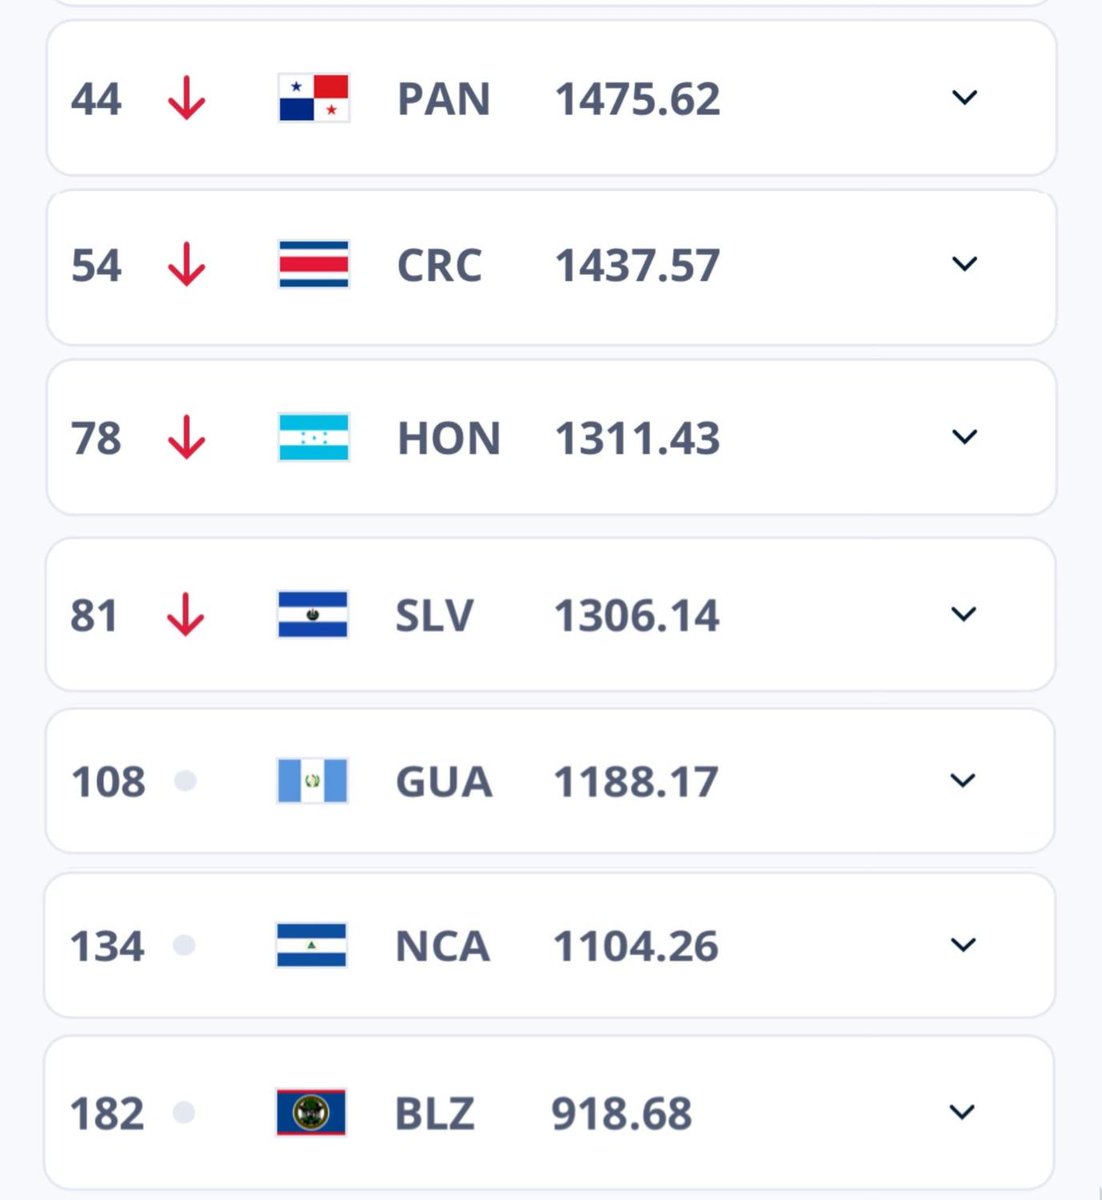 ¡NUESTRO RANKING🔝🔥!

Así están ubicadas las selecciones centroamericanas a nivel regional y global según la última actualización del #RankingFIFA. 

¿Estás de acuerdo👀?